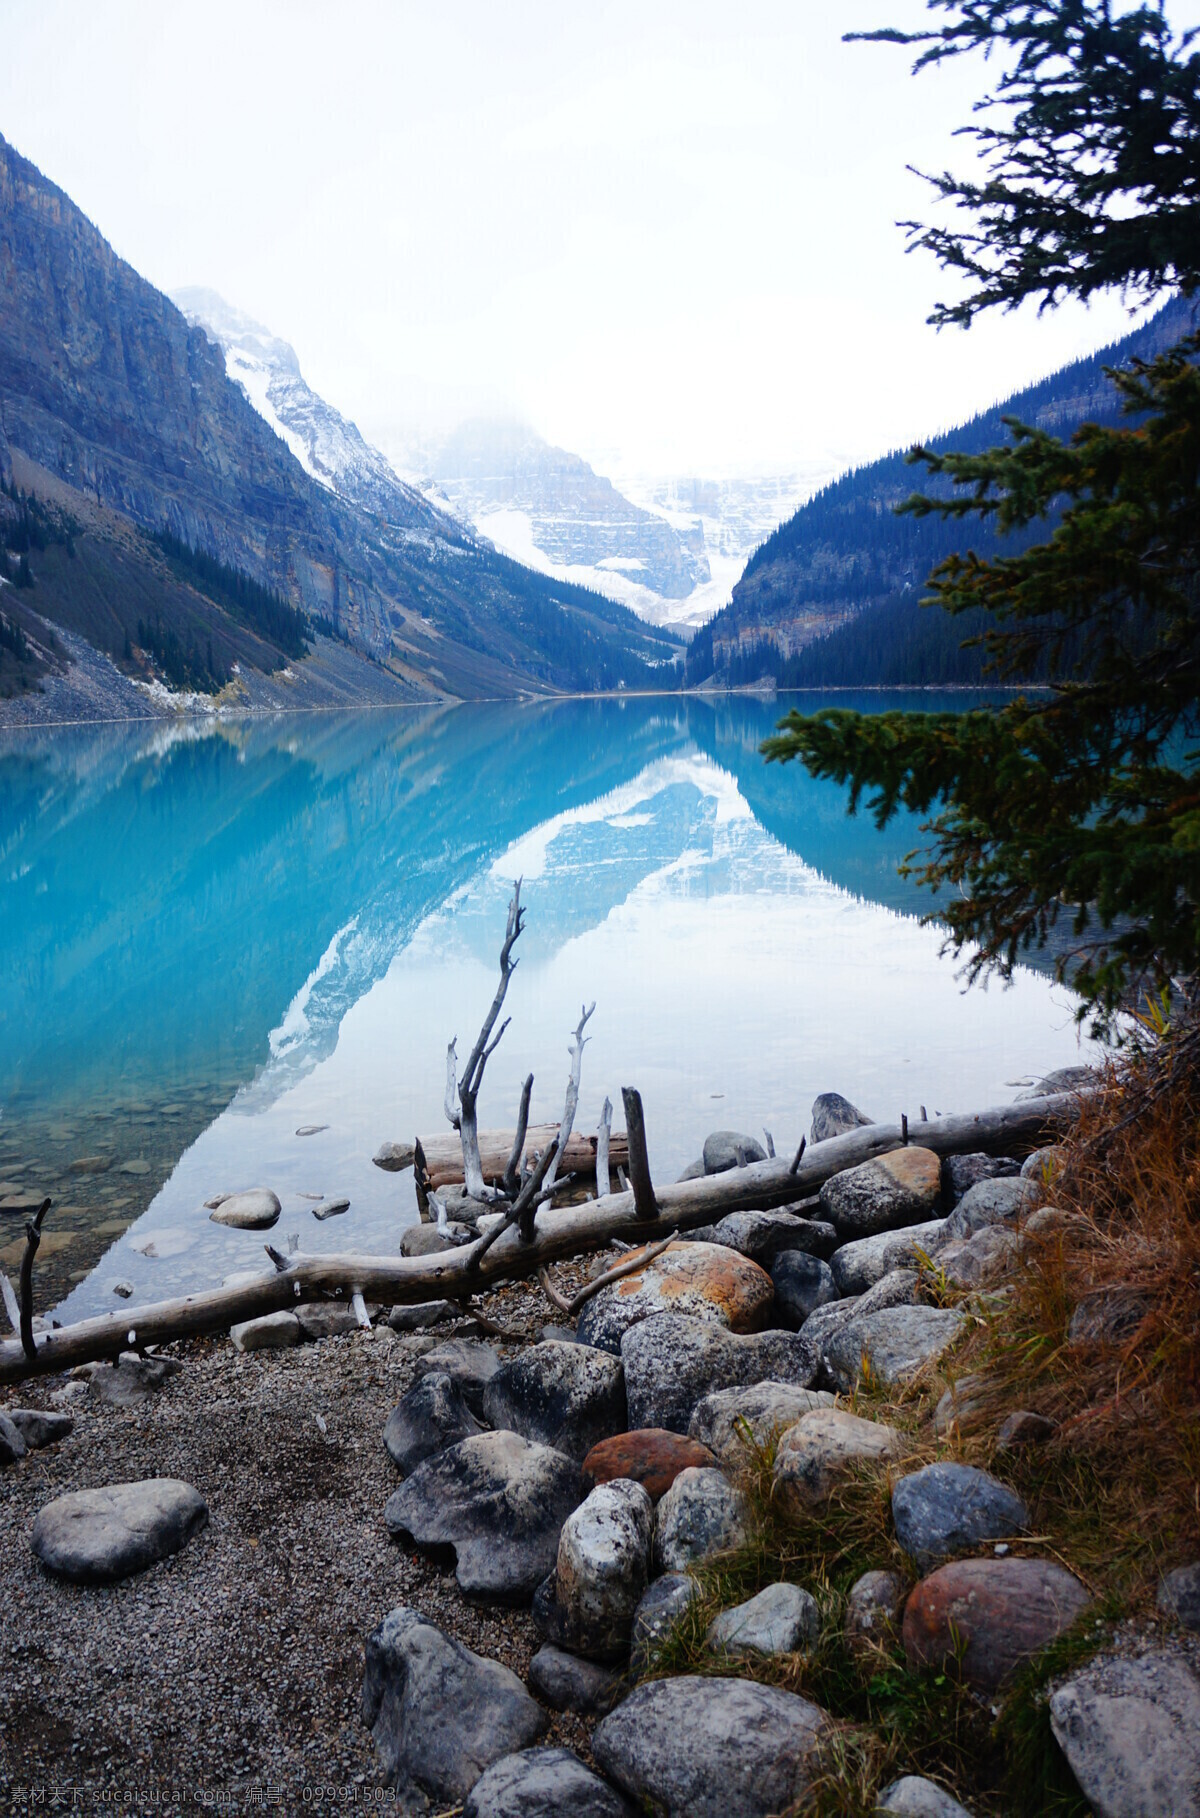 加拿大景观 加拿大 落基山脉 风景 山 雪山 湖 国外旅游 旅游摄影